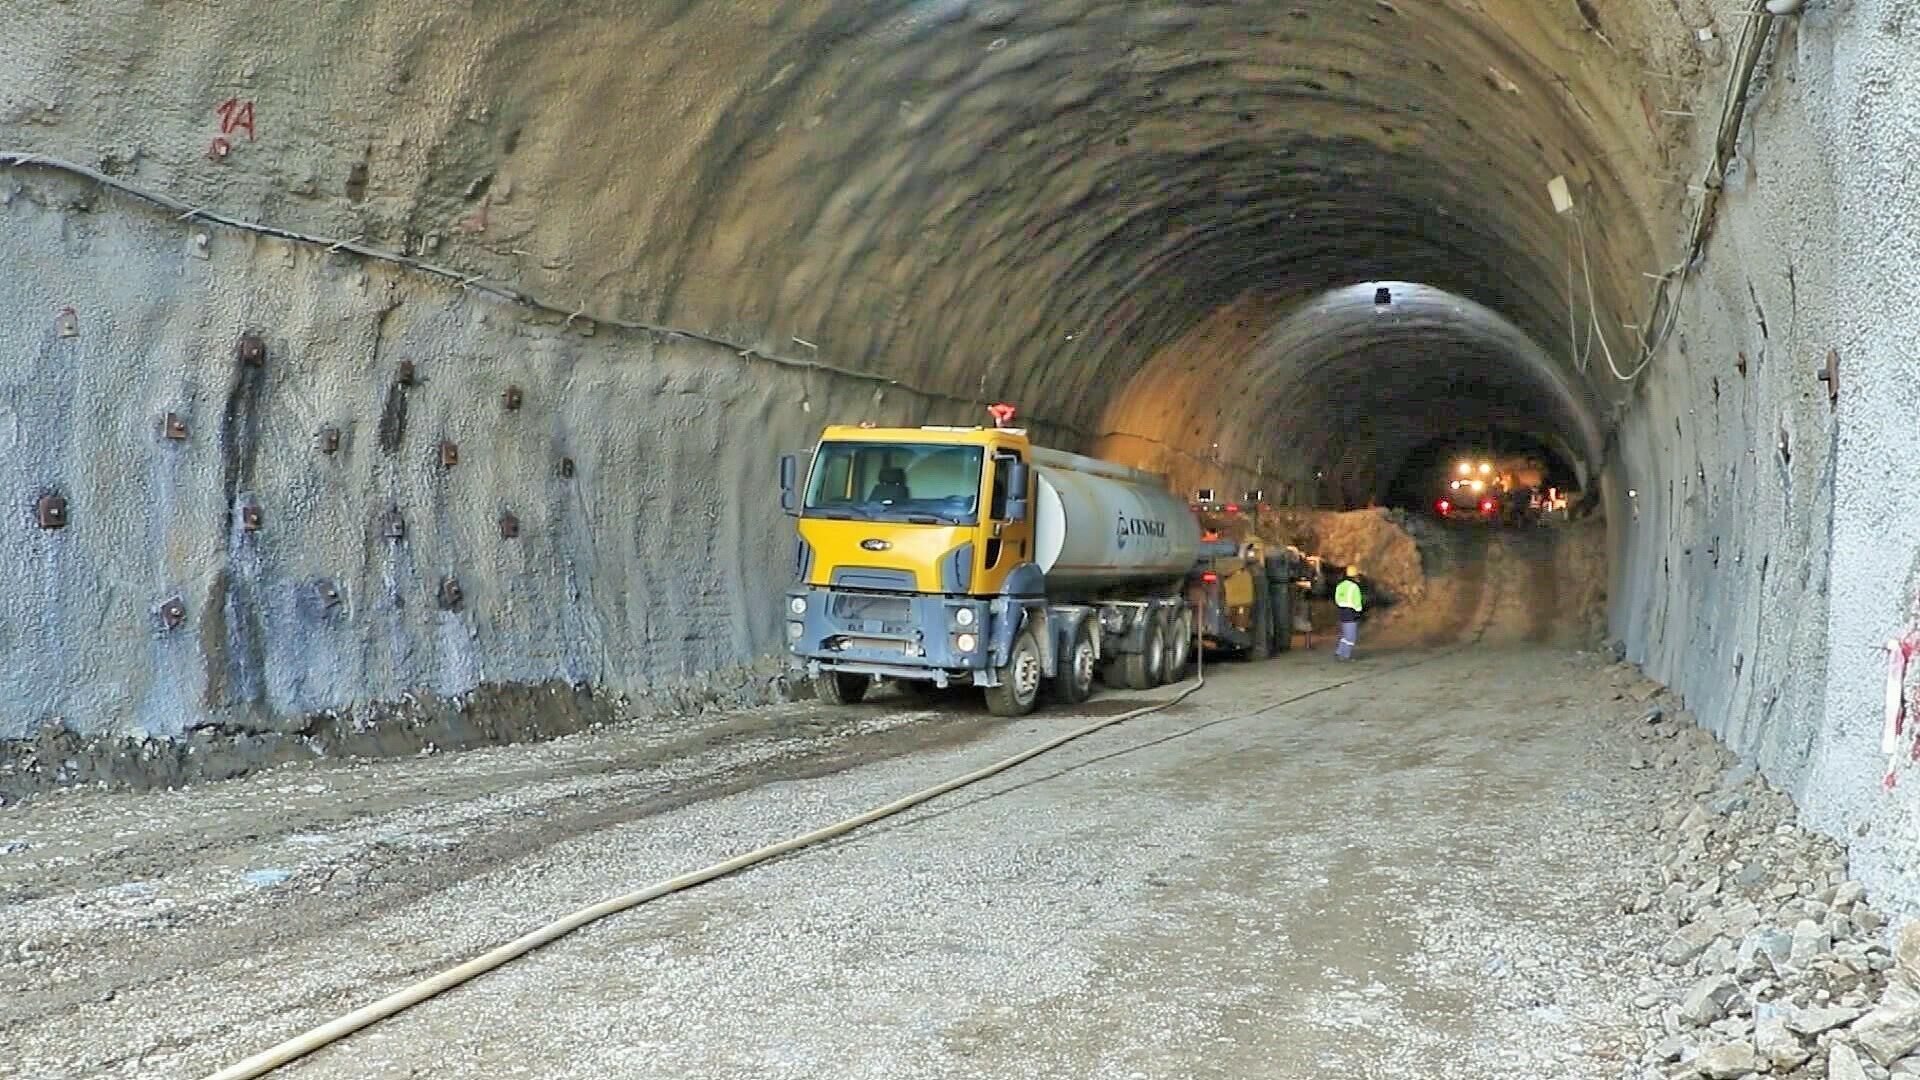 Toğanalı-Kəlbəcər avtomobil yolunda Murovdağ tunelinin inşası - Sputnik Азербайджан, 1920, 06.10.2021